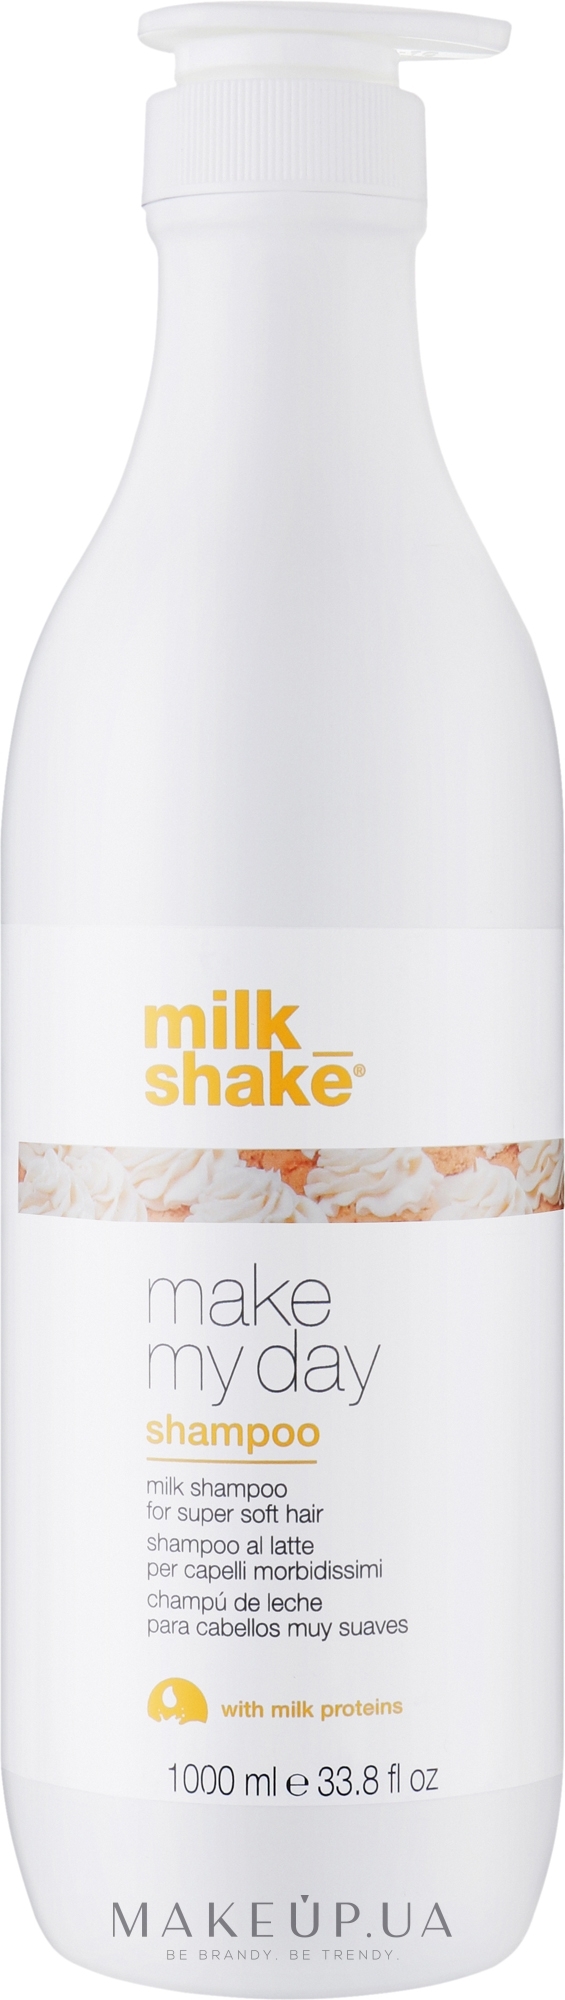 Шампунь для смягчения волос - Milk_shake Make My Day Shampoo — фото 1000ml